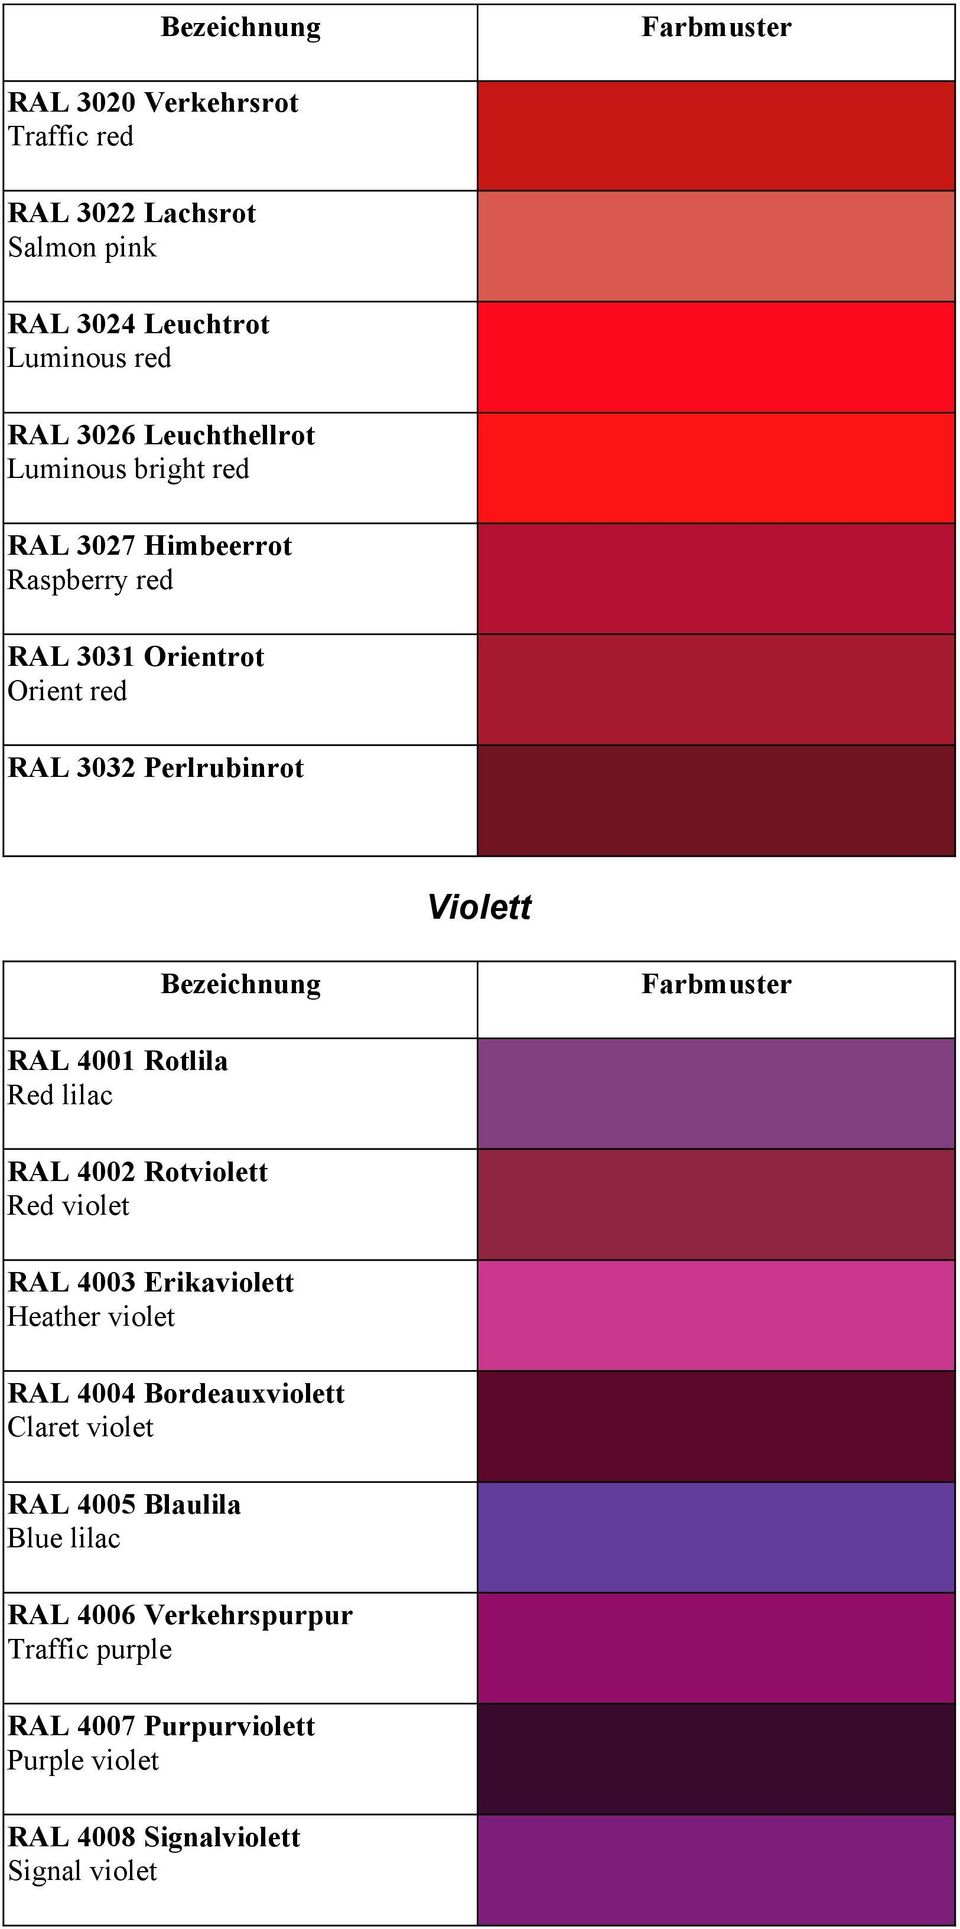 lilac RAL 4002 Rotviolett Red violet RAL 4003 Erikaviolett Heather violet RAL 4004 Bordeauxviolett Claret violet RAL 4005